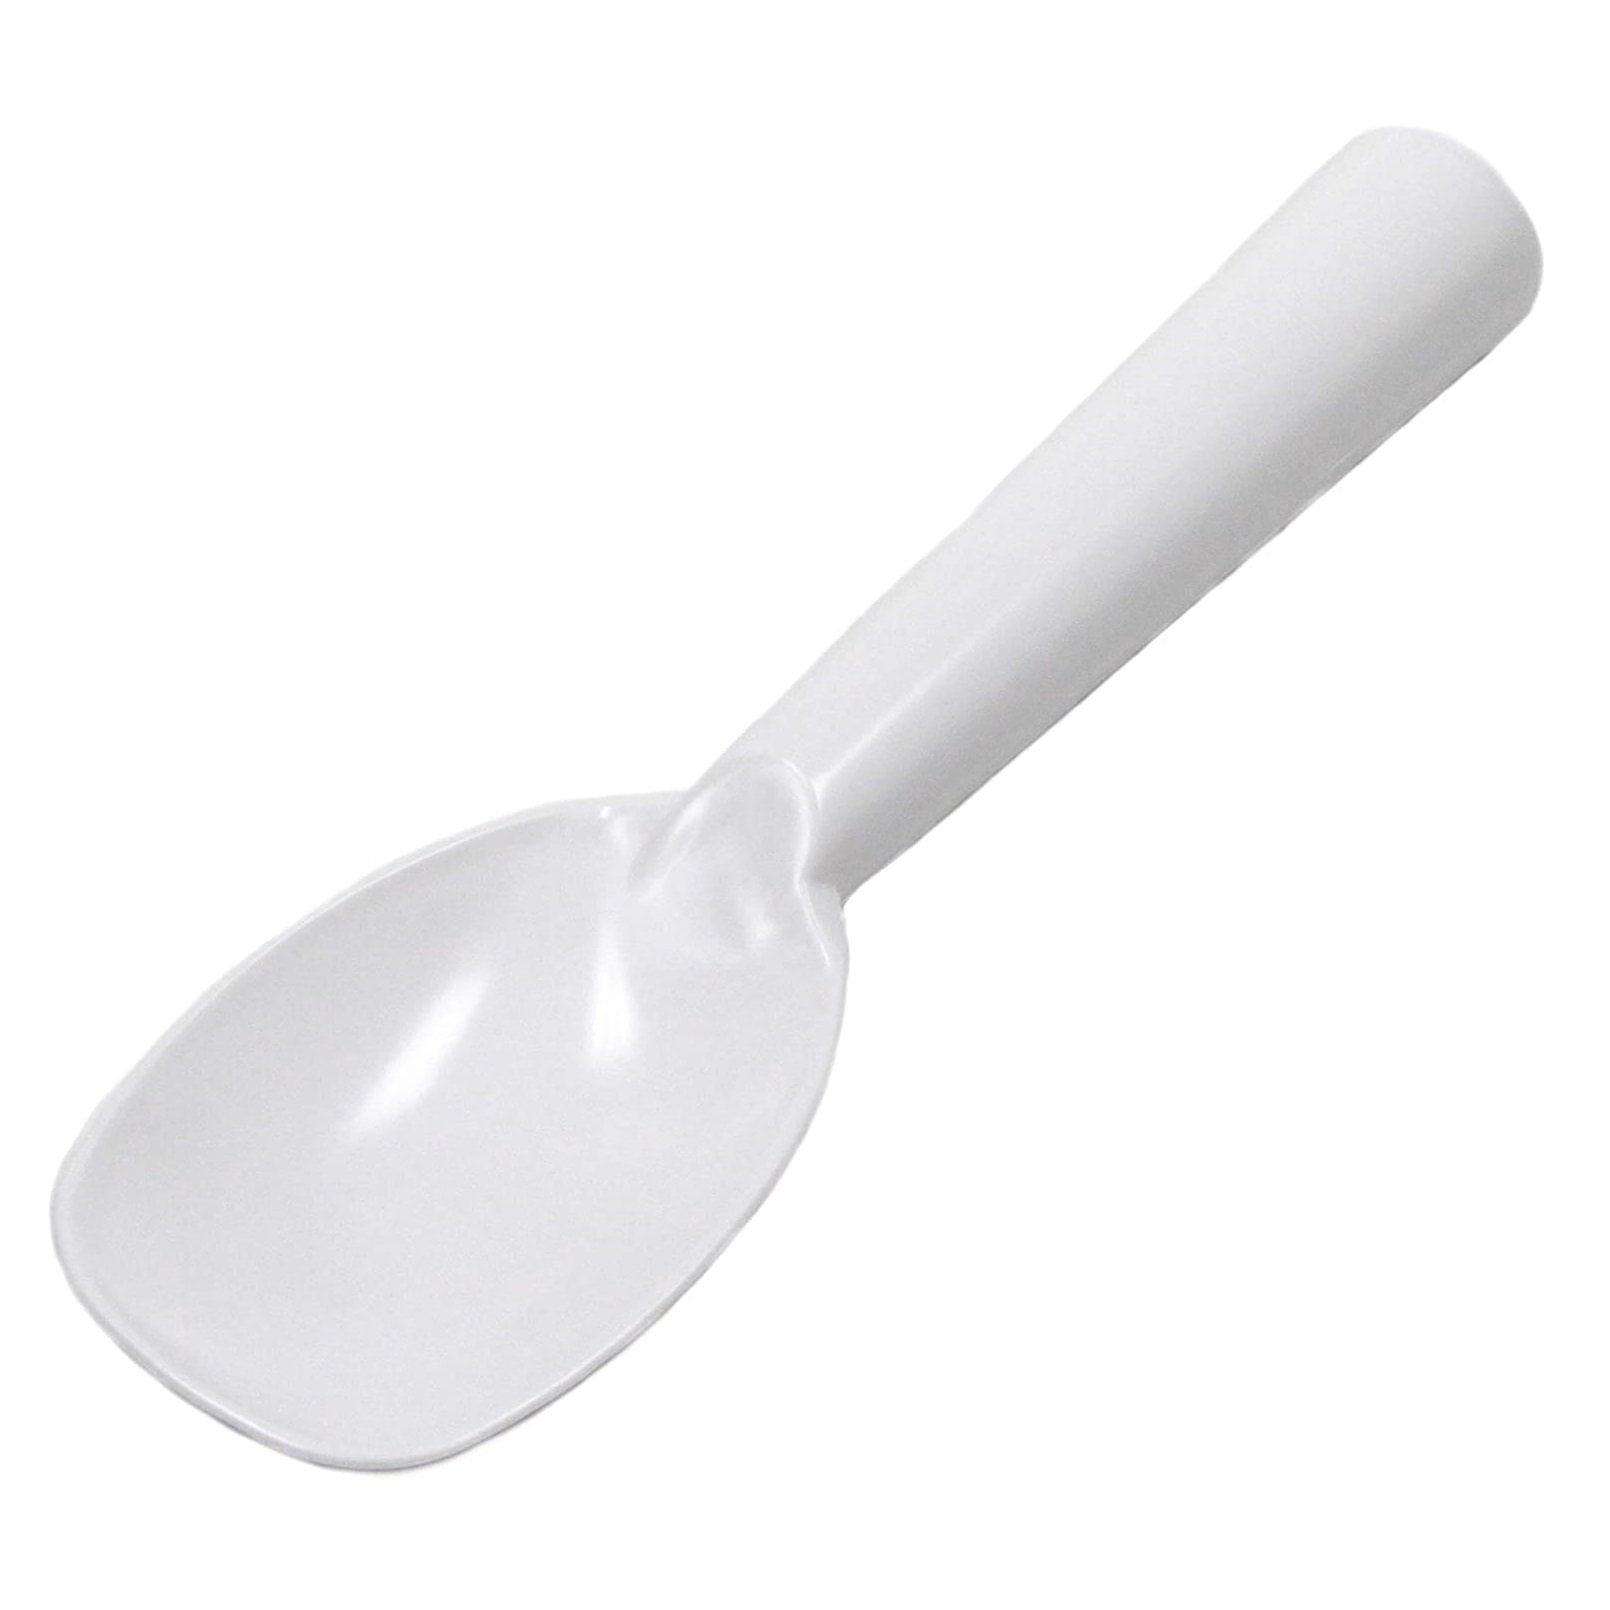 O-LYFE - Spade - Ice Cream Spade / Scoop / Scooper / Spoon Left